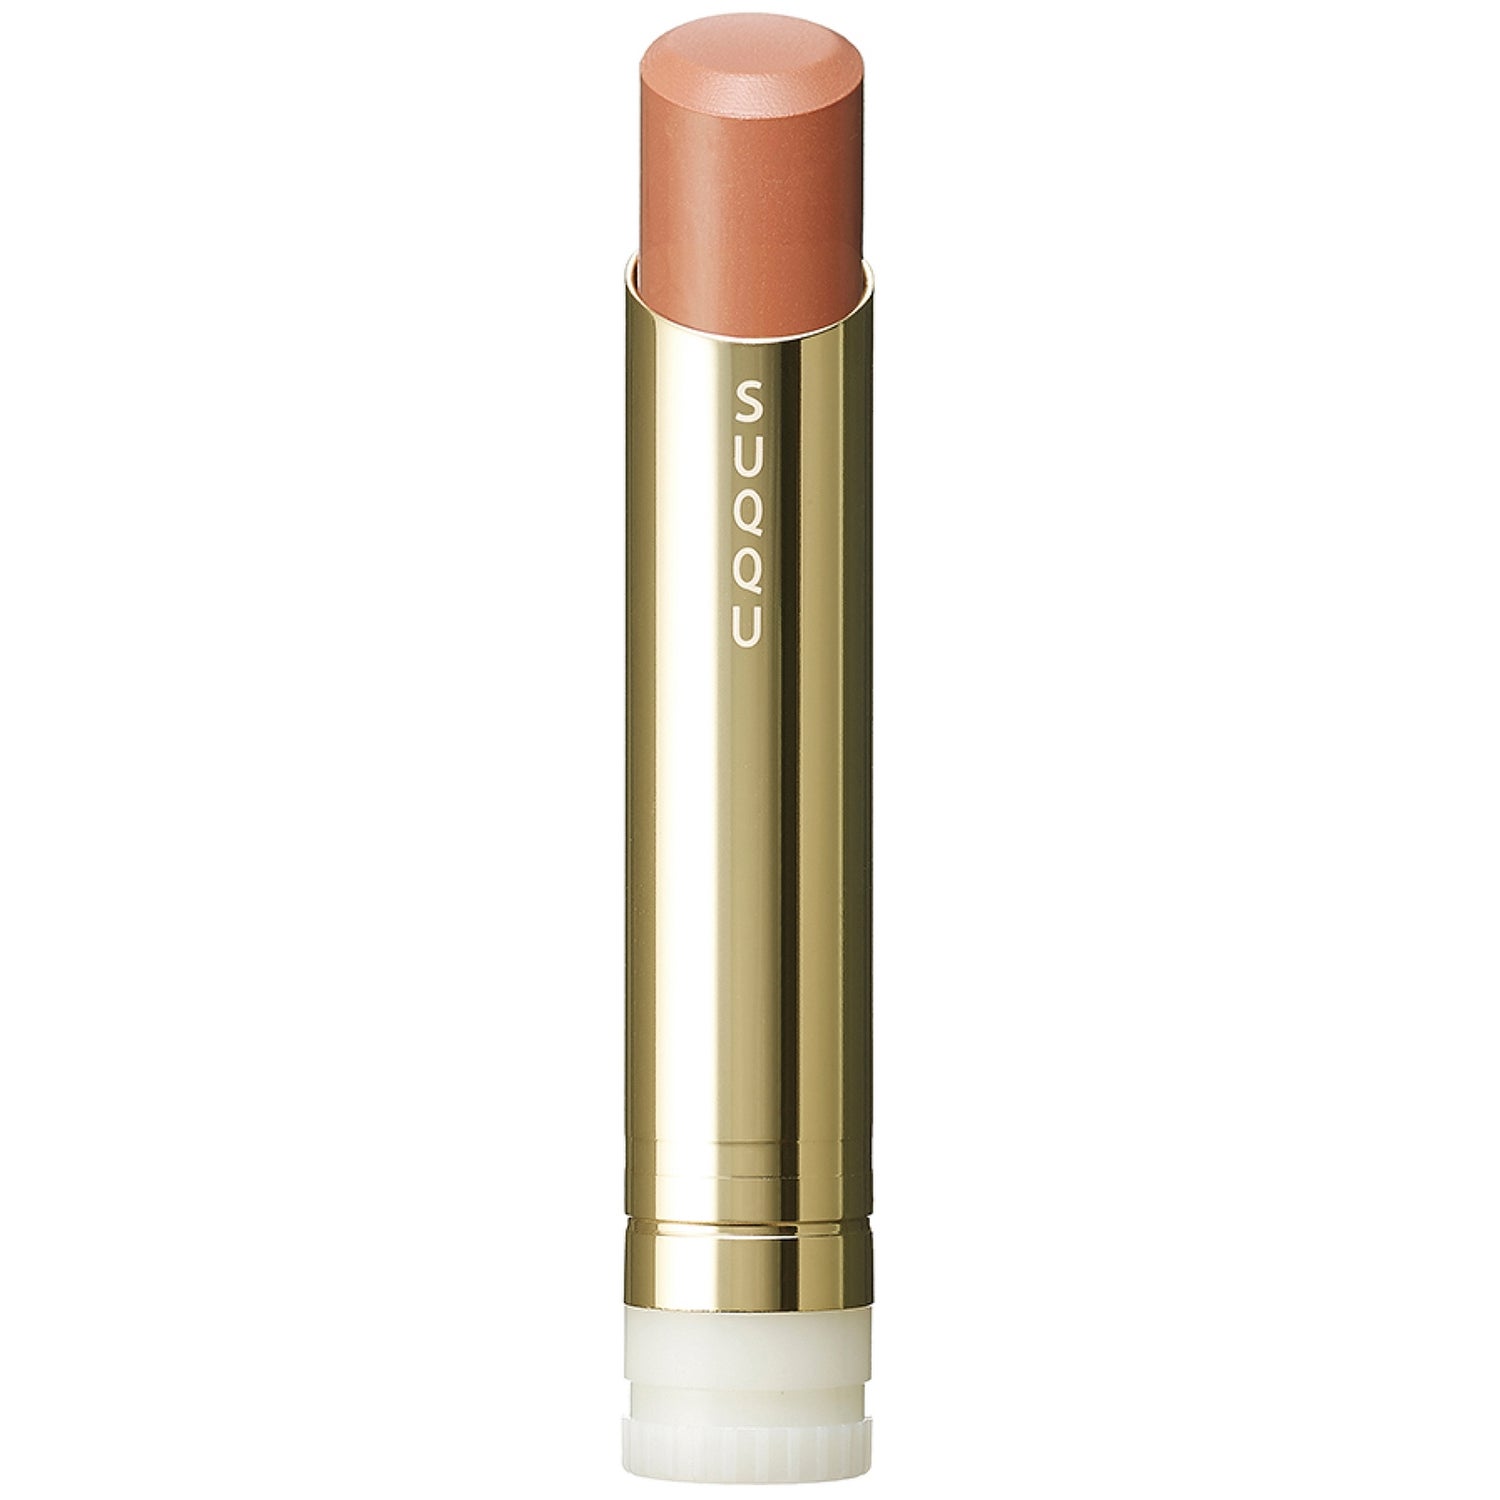 SUQQU Moisture Glaze Lipstick Refill 3.7g (Various Shades)